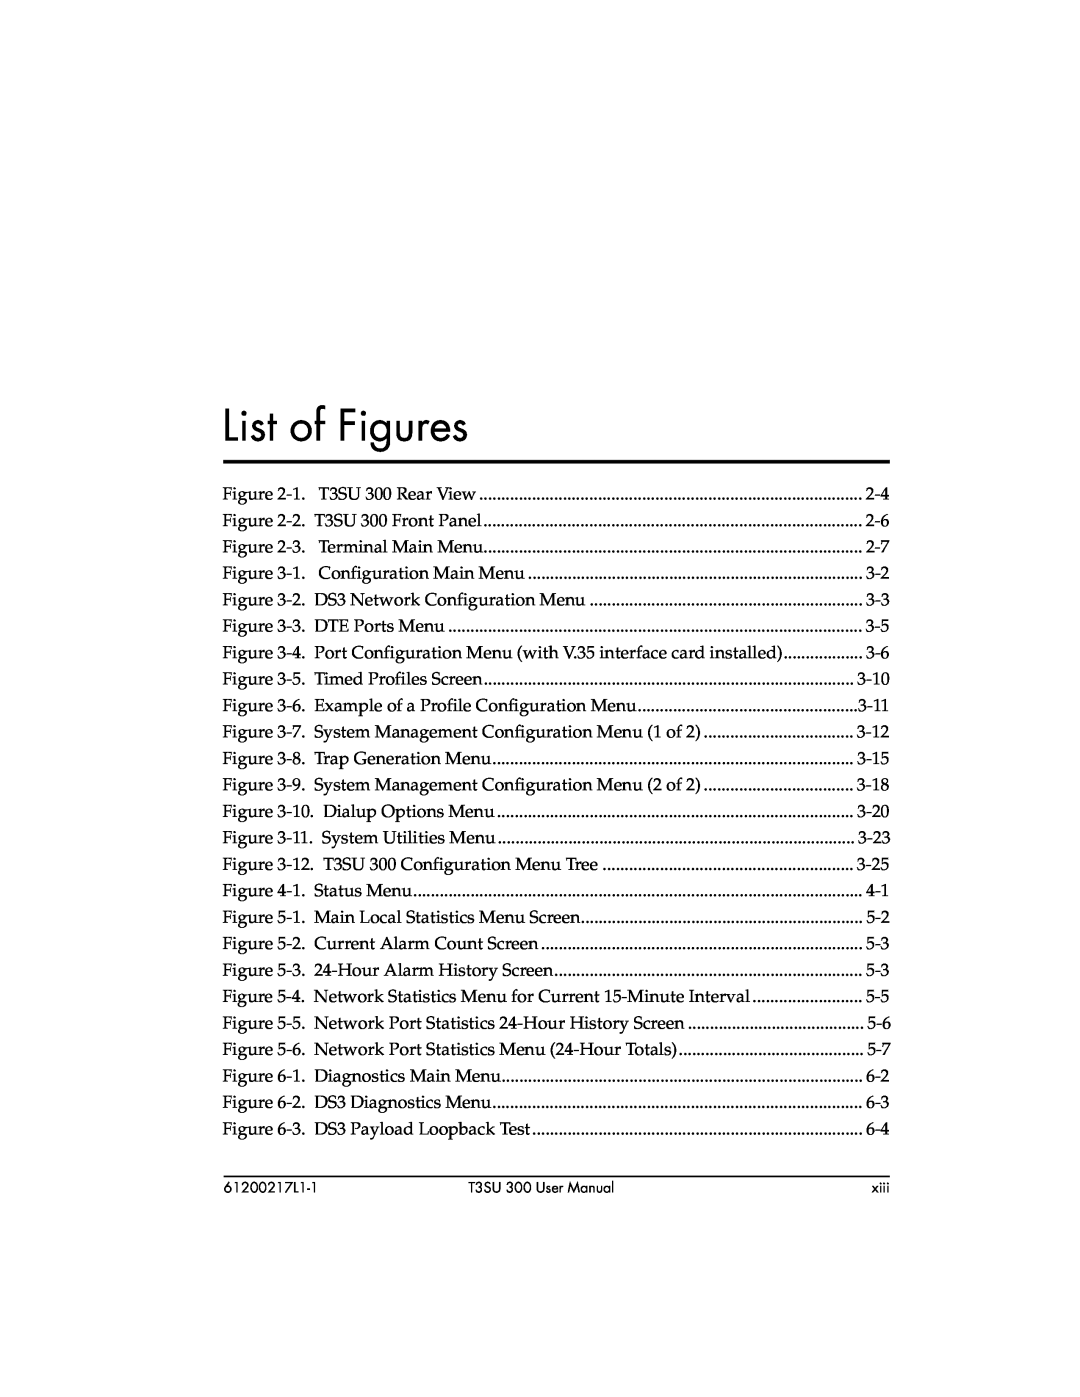 ADTRAN T3SU 300 user manual List of Figures 